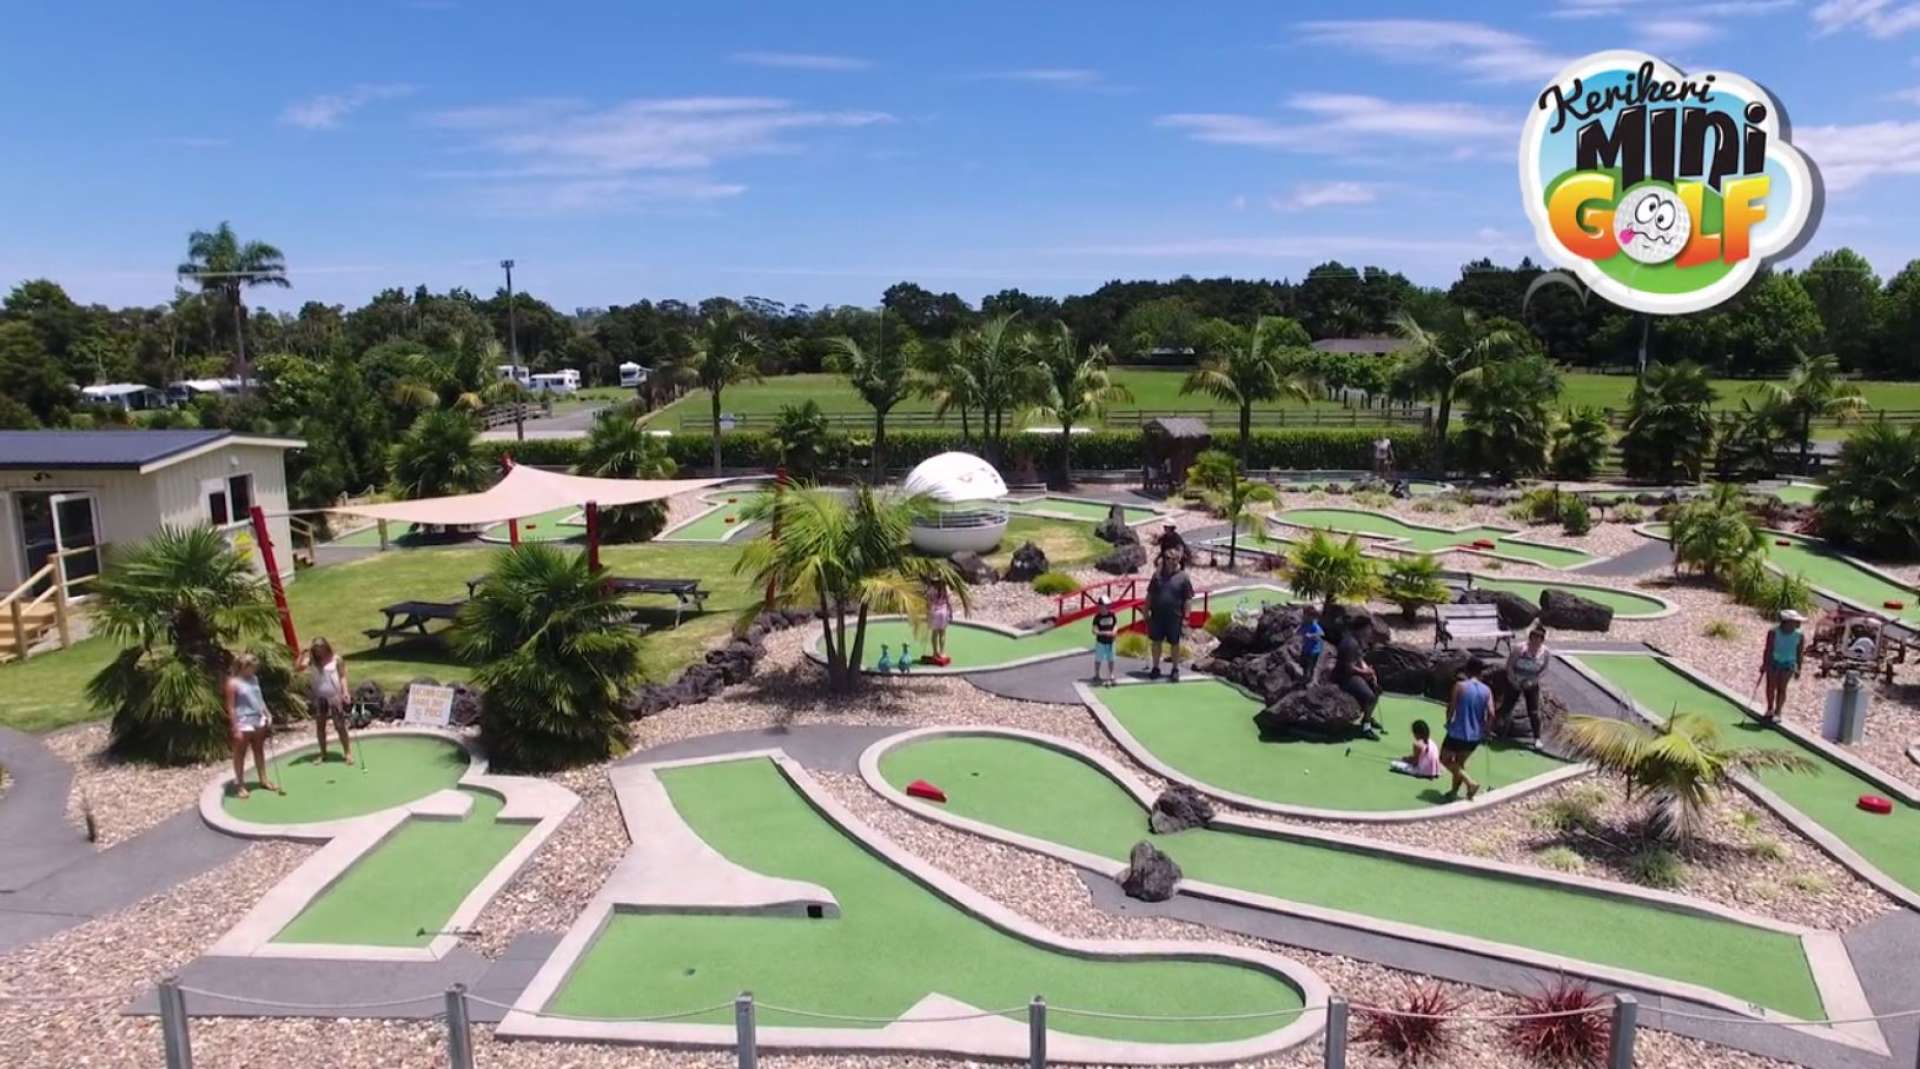 Kerikeri Mini Golf 18 hole attraction